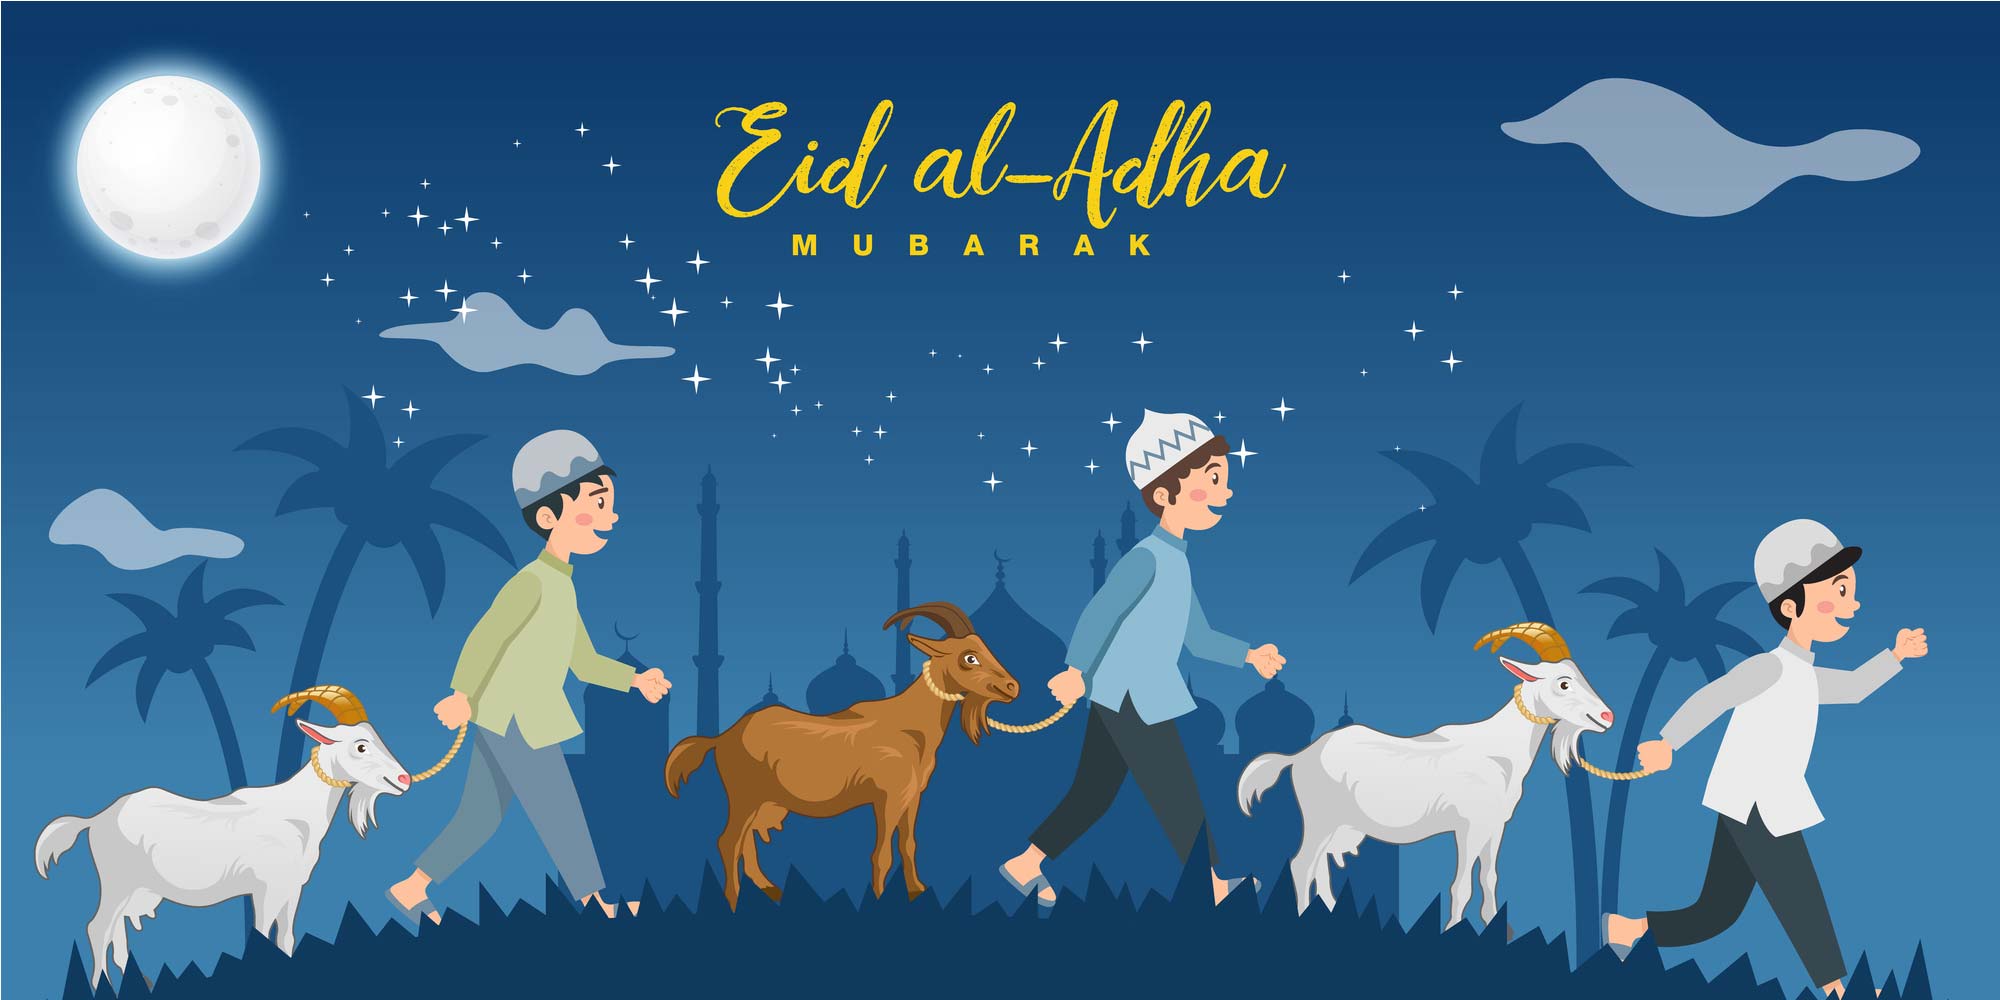 World Celebrates `Eid AlAdha on Friday, July 31 About Islam